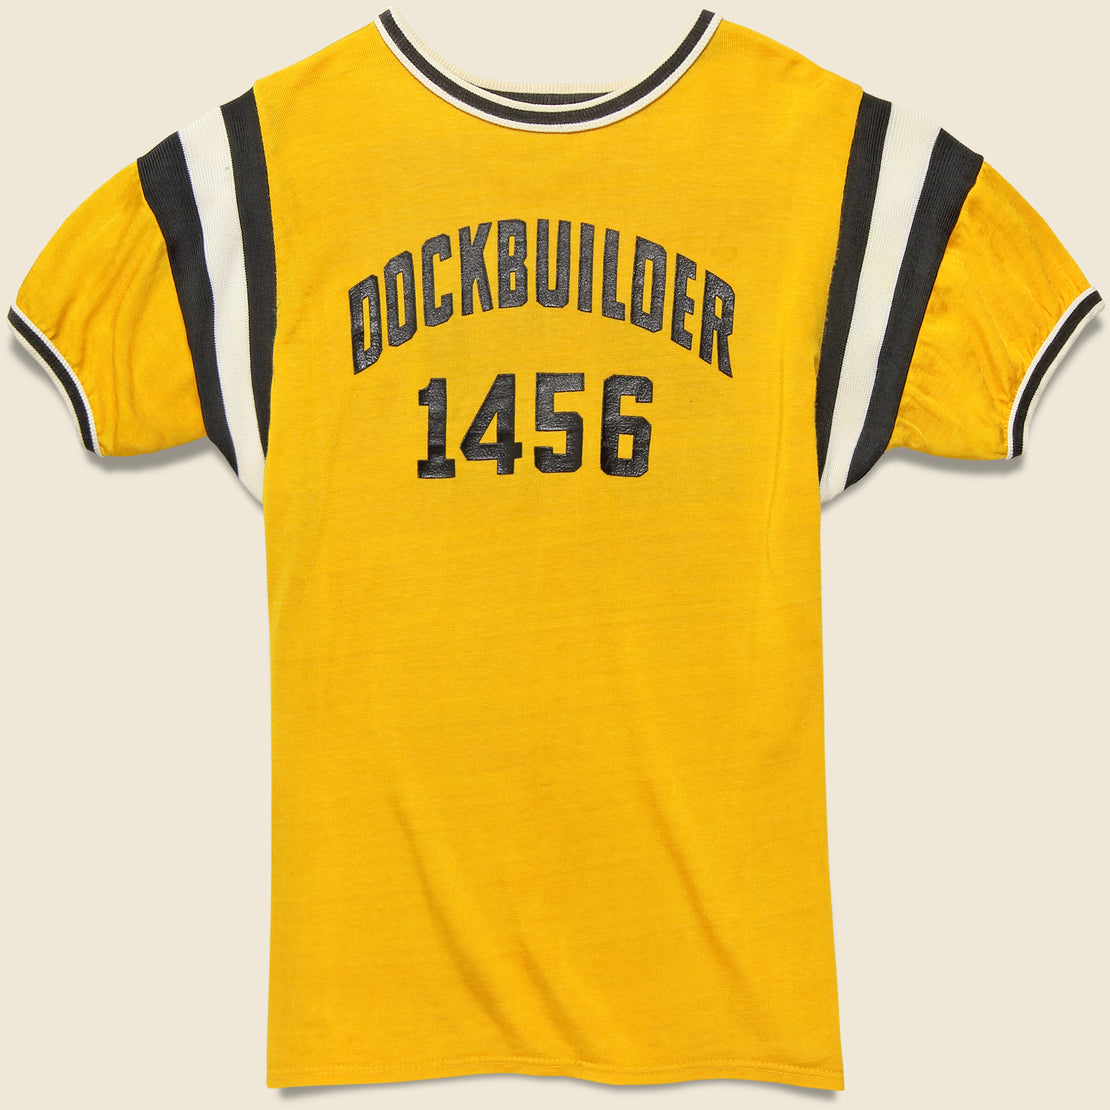 Vintage Vintage Dockbuilder 1456 Jersey